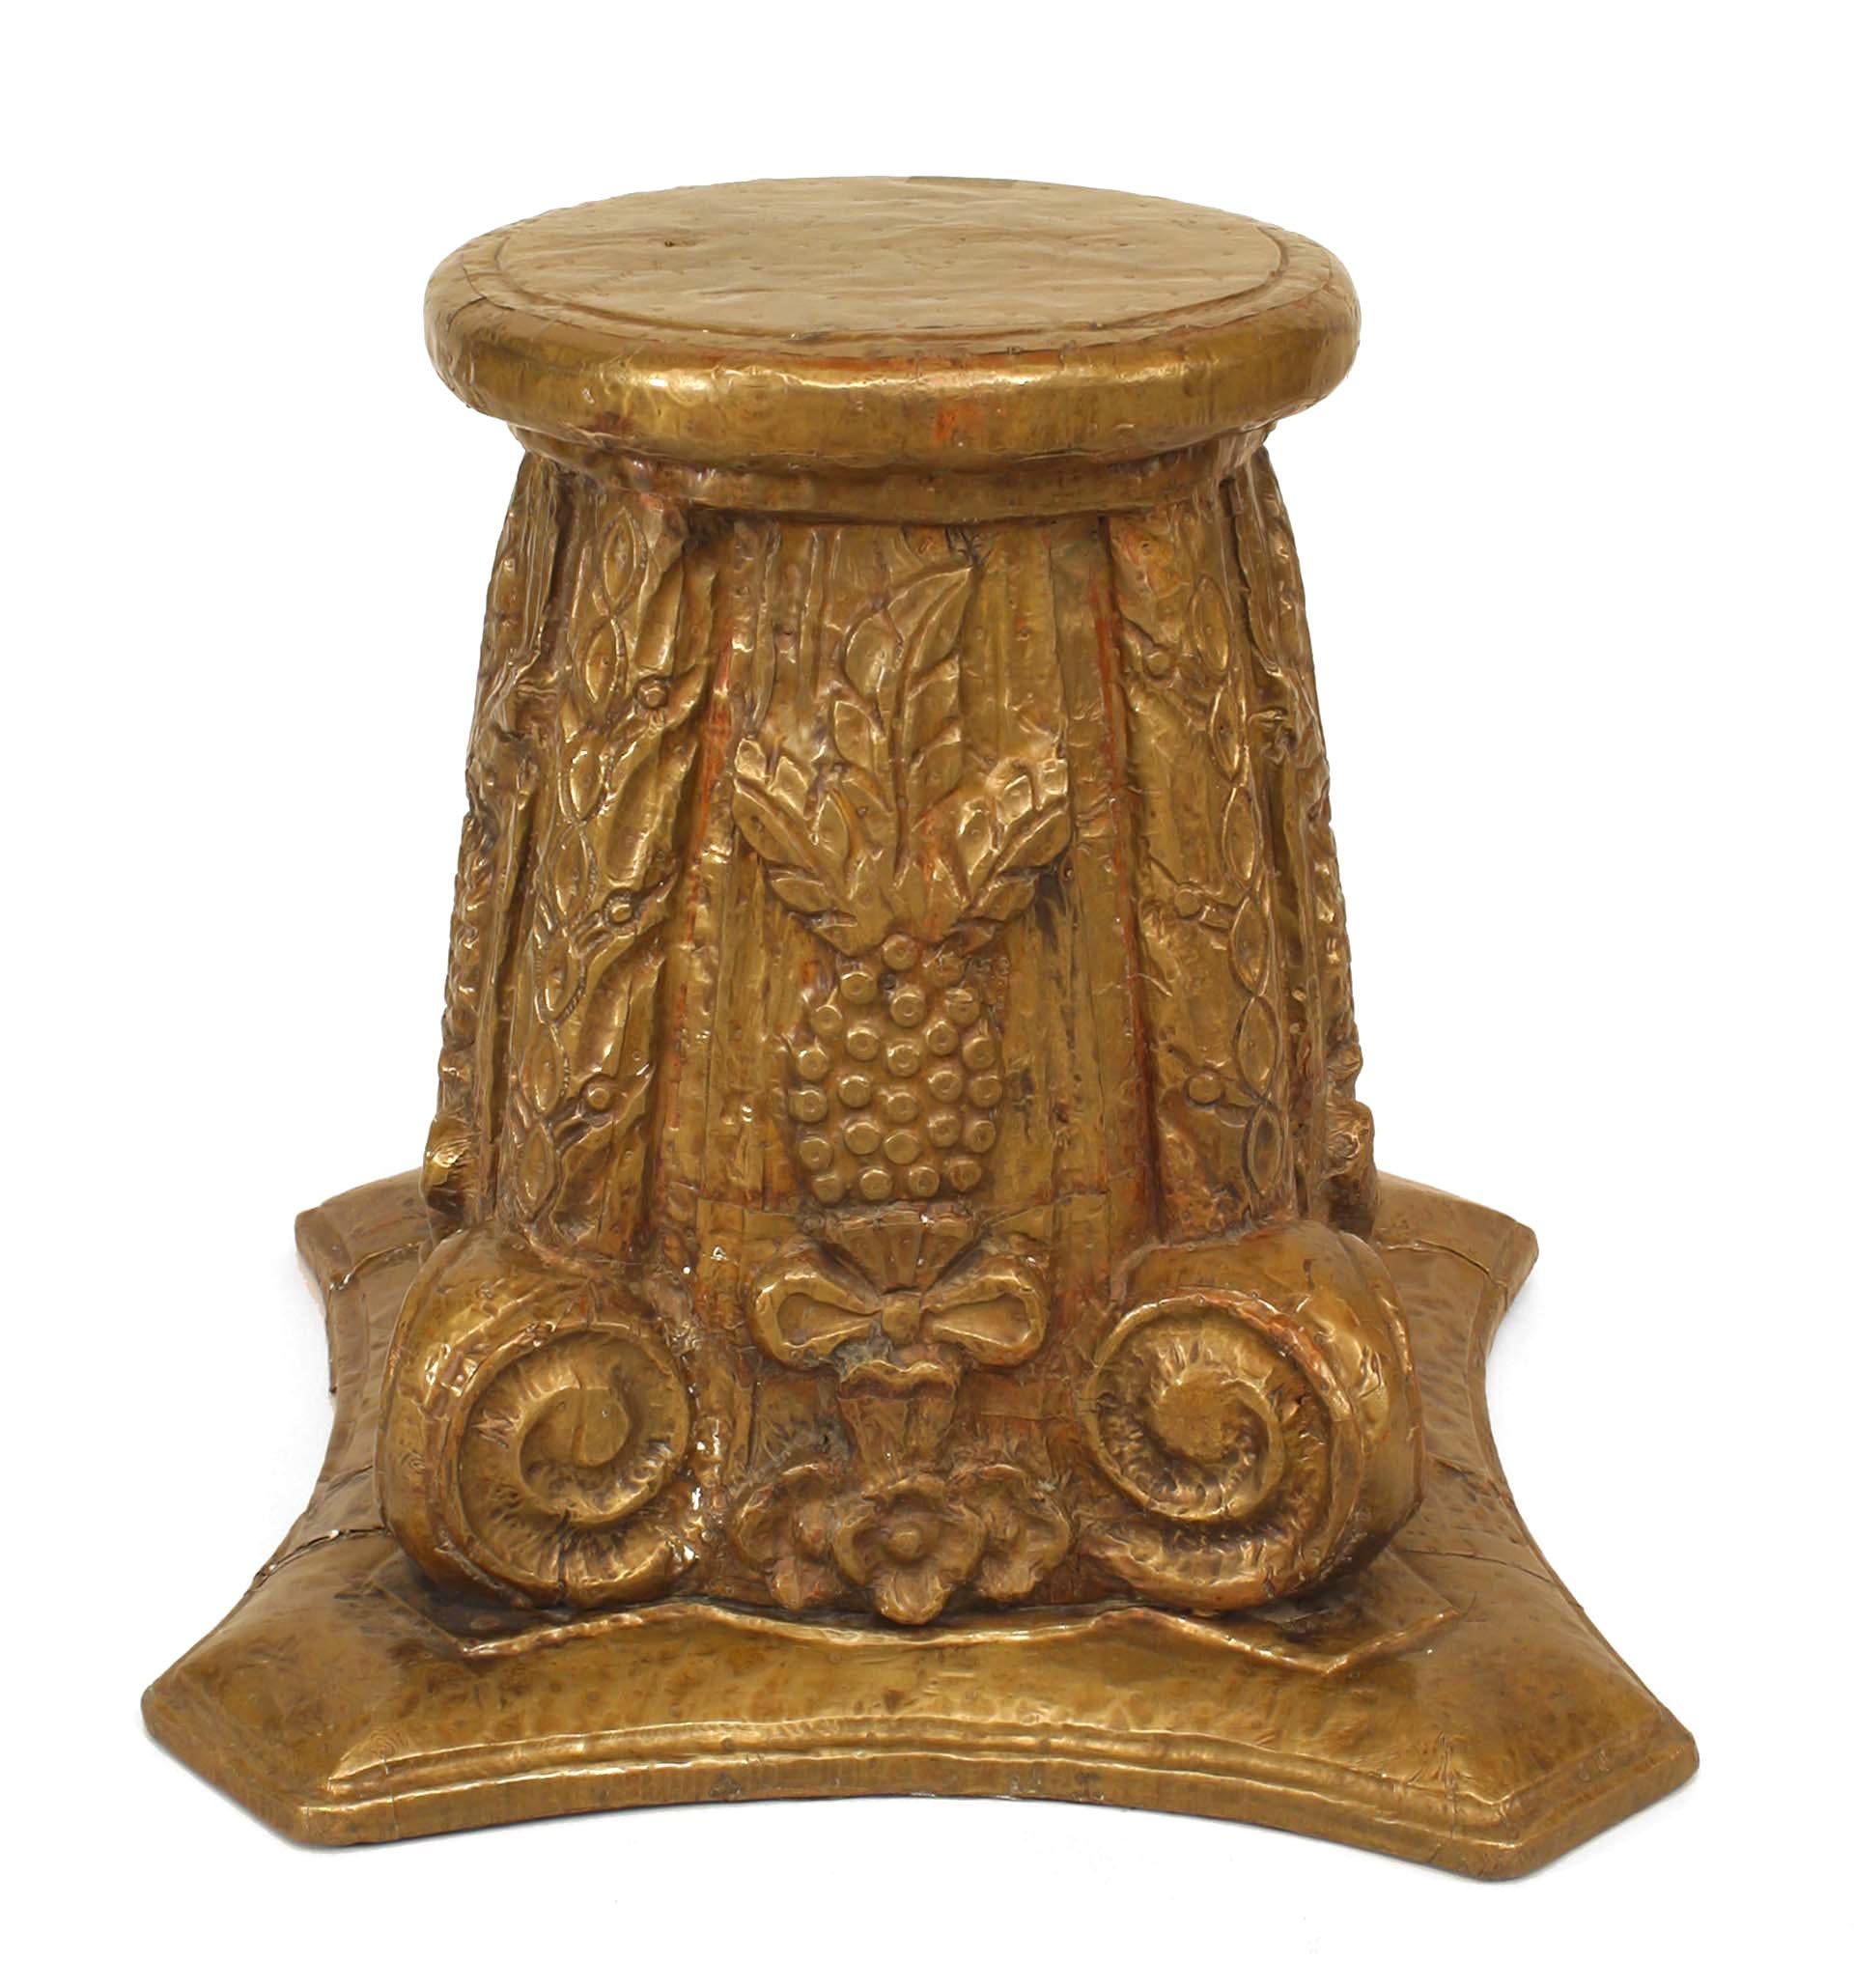 Paire de tabourets / tables d'appoint Art Déco Corinthien en forme de colonne, en laiton gaufré sur bois avec motifs floraux et volutes. (PRIX PAR PAILLE)
